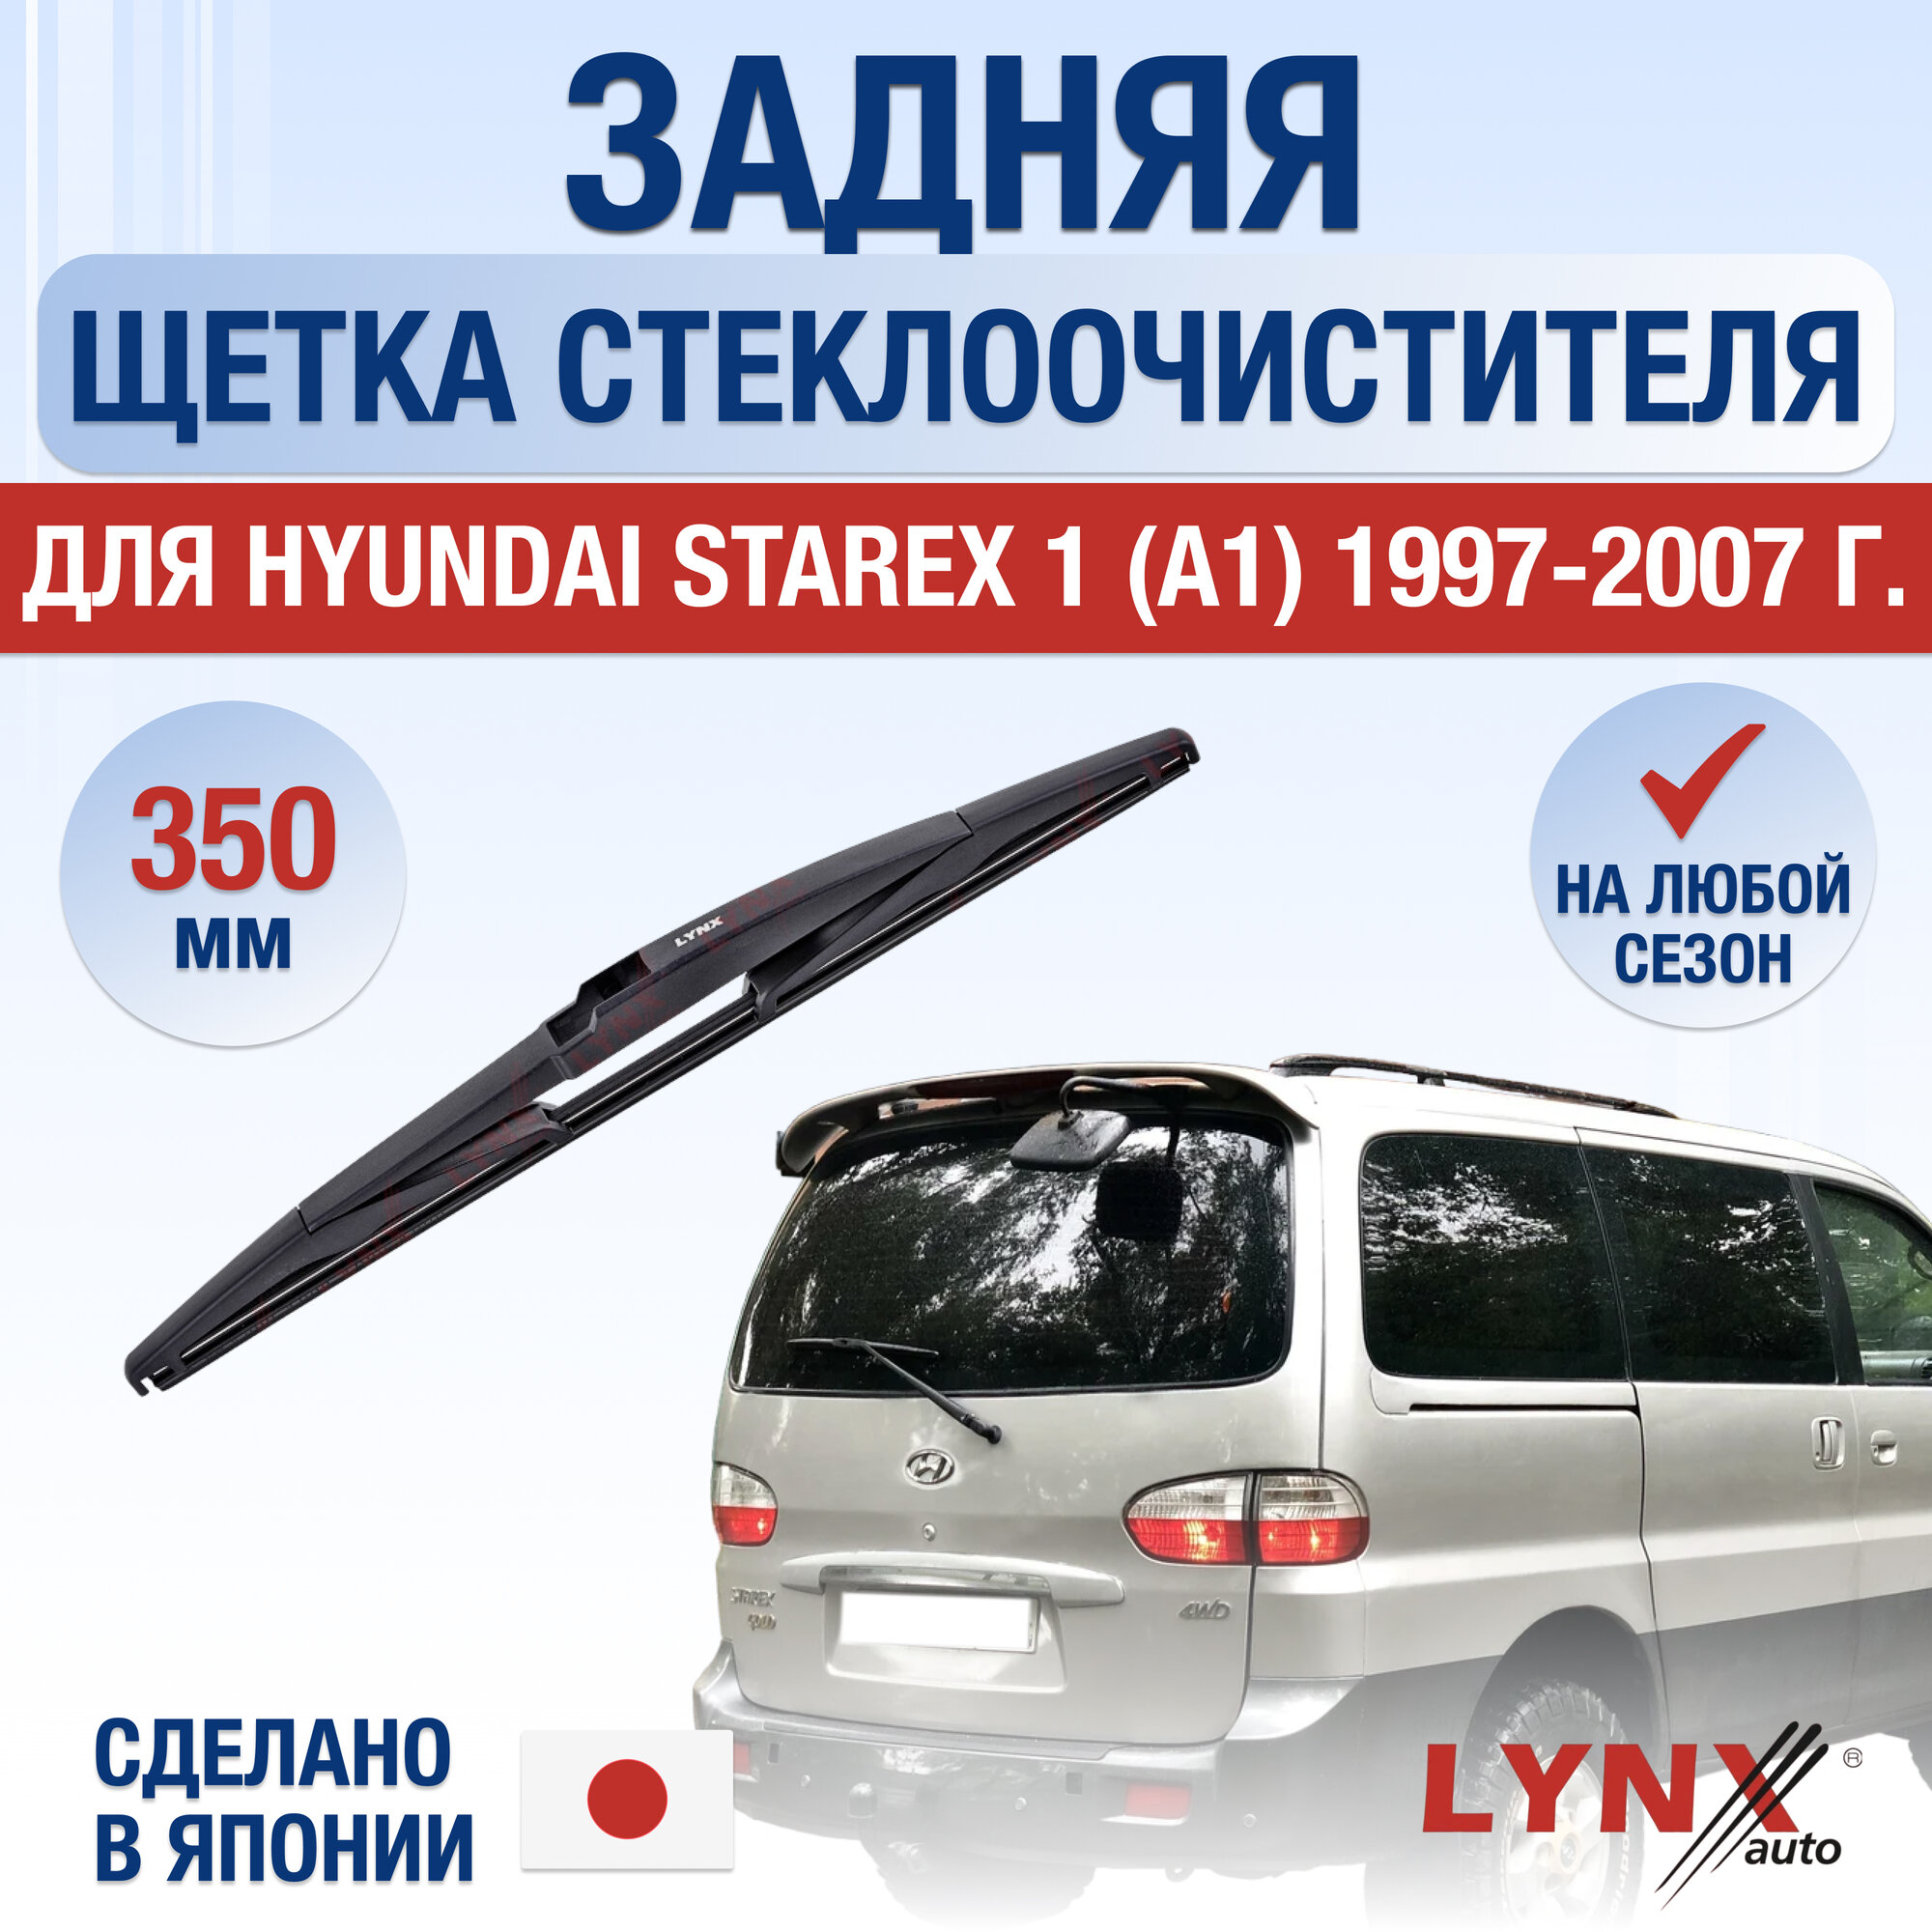 Задняя щетка стеклоочистителя для Hyundai Starex (1) A1 / 1997 1998 1999 2000 2001 2002 2003 2004 2005 2006 2007 / Задний дворник 350 мм Хендай Старекс